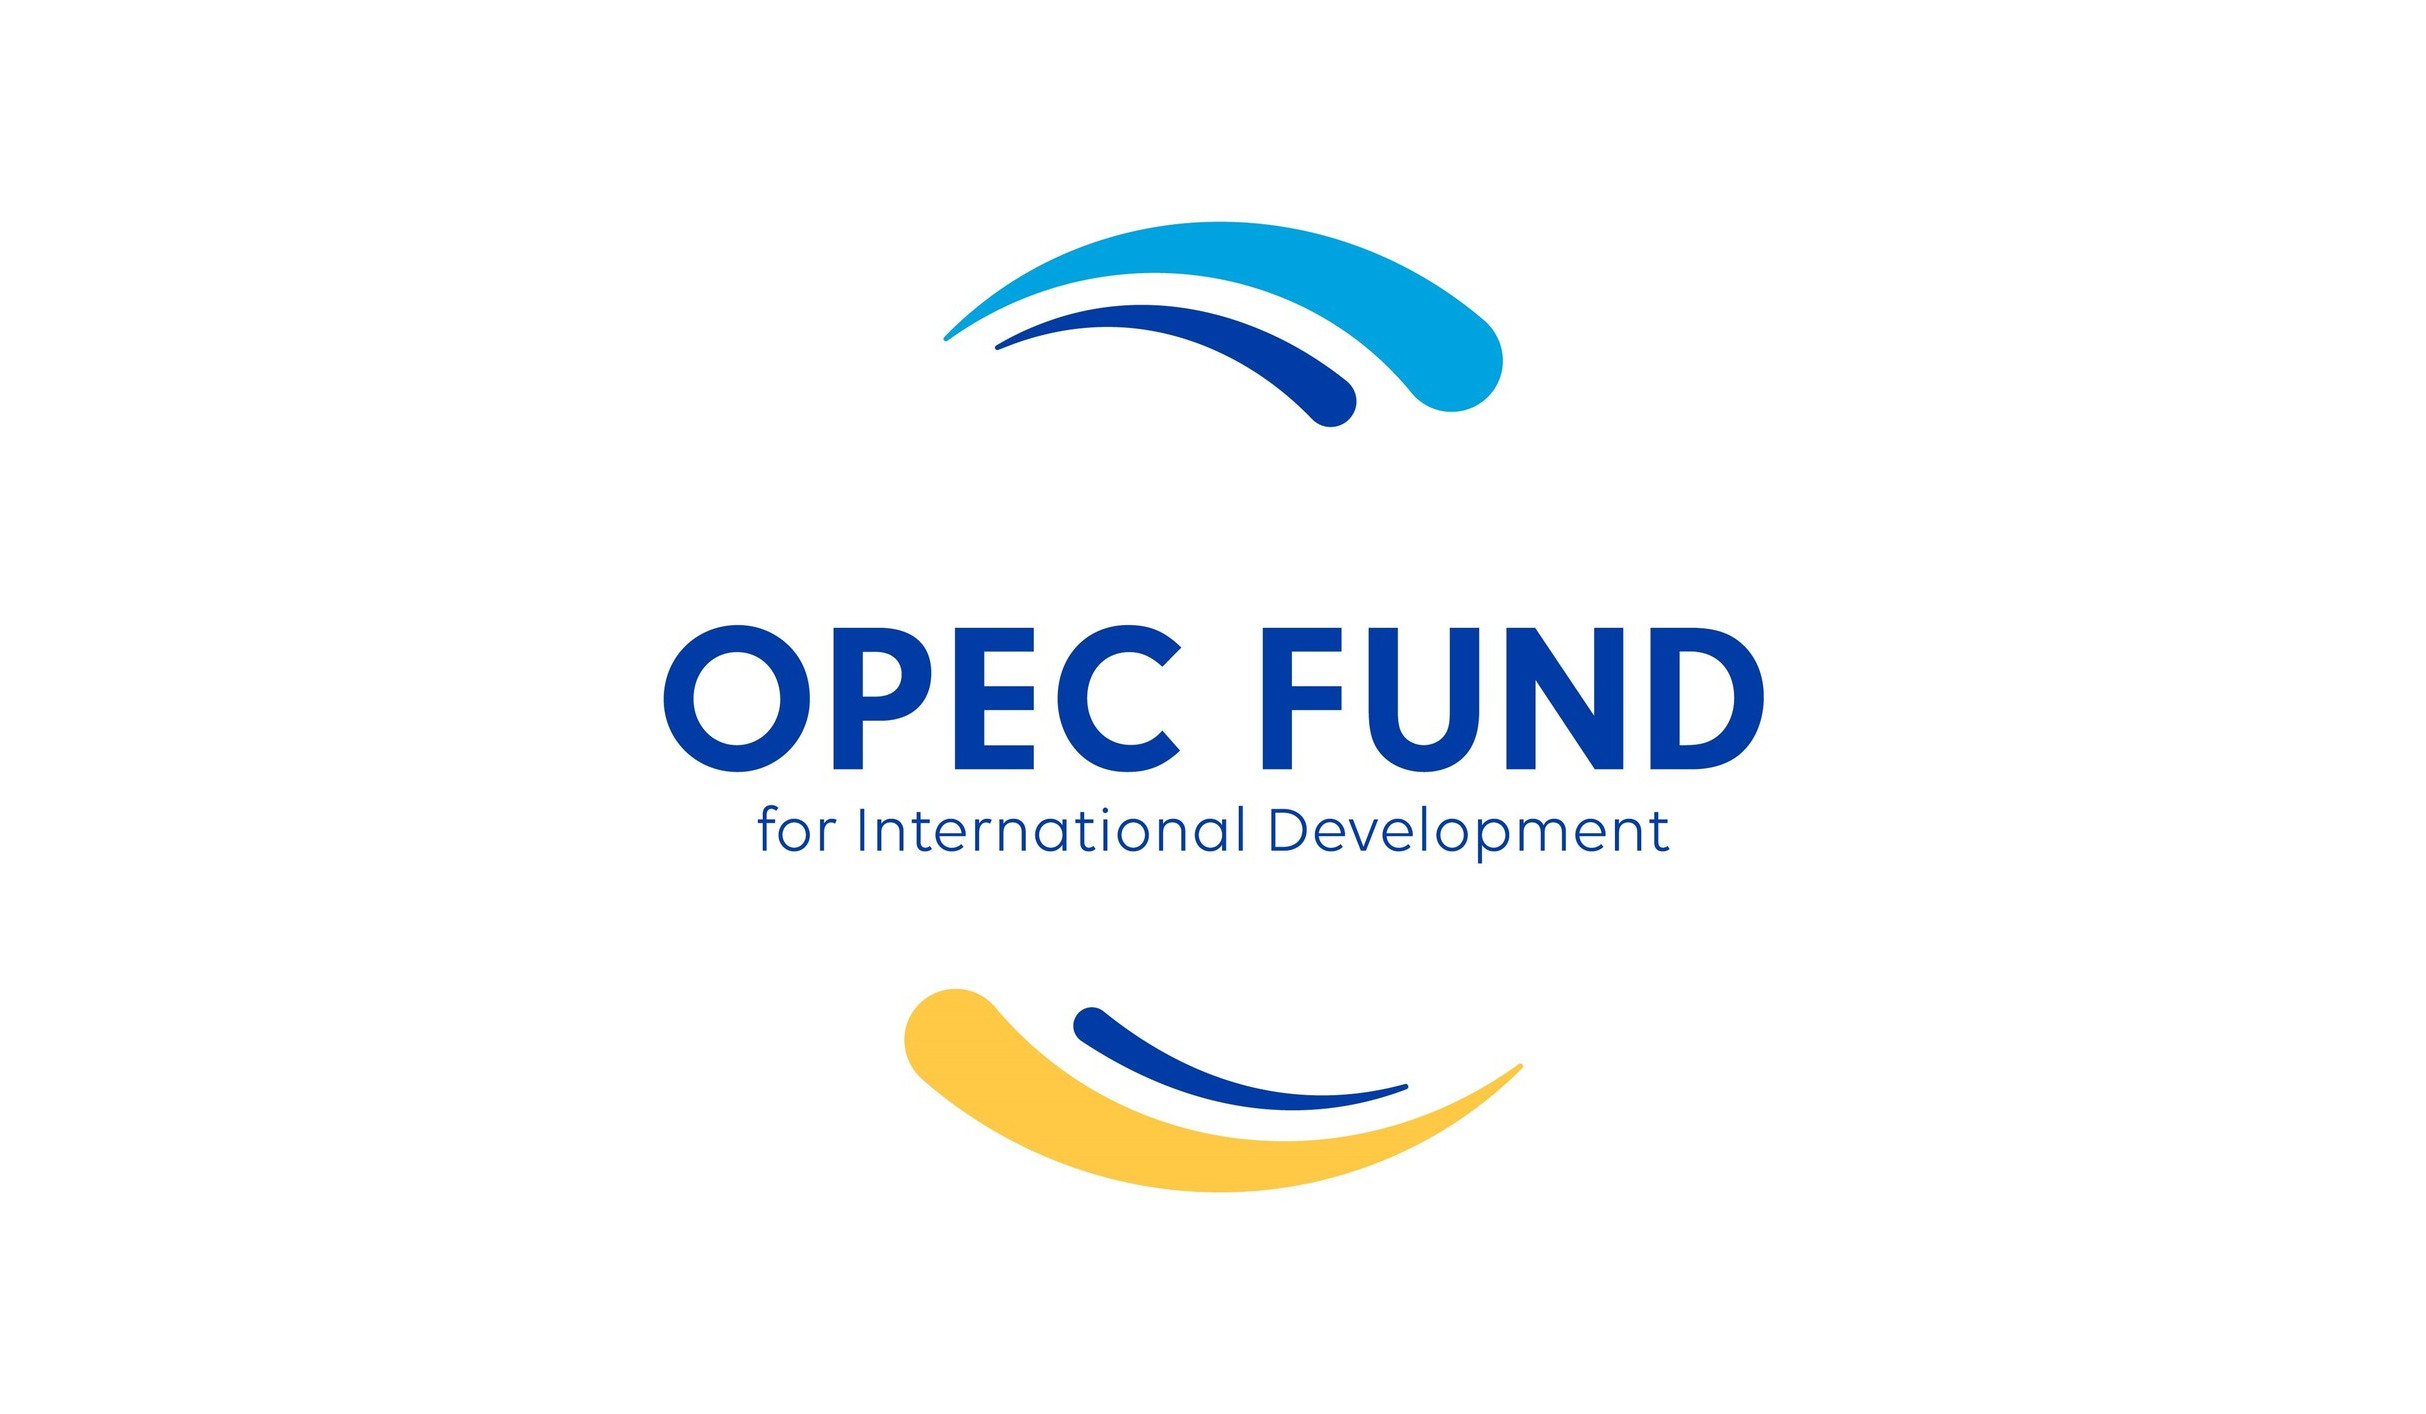 OPEC-ի Միջազգային զարգացման հիմնադրամը Հայաստանին 50 միլիոն եվրո վարկ կհատկացնի կլիմայական քաղաքականության բարեփոխումների համար